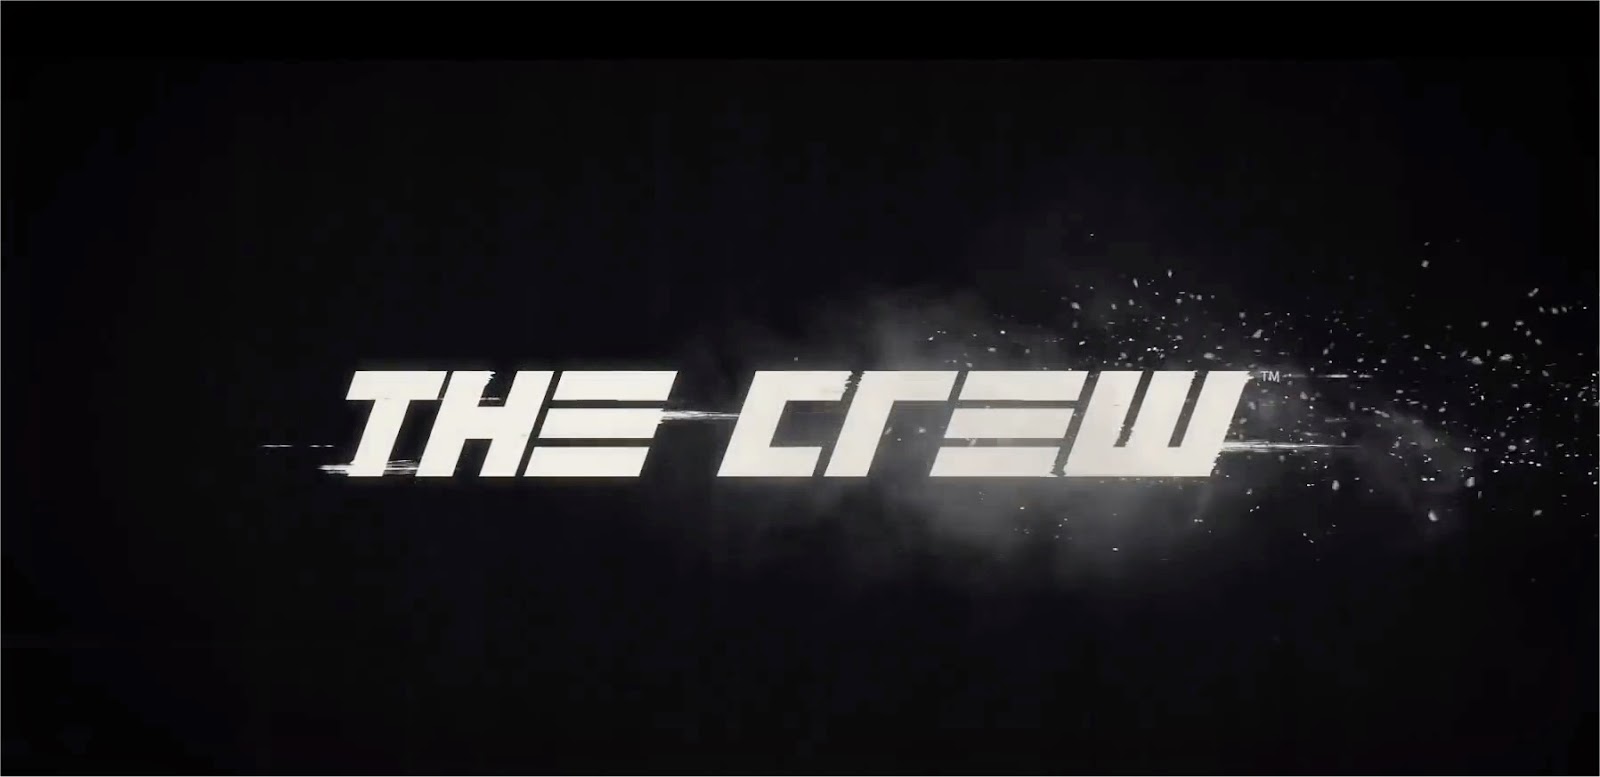 The Crew Logo